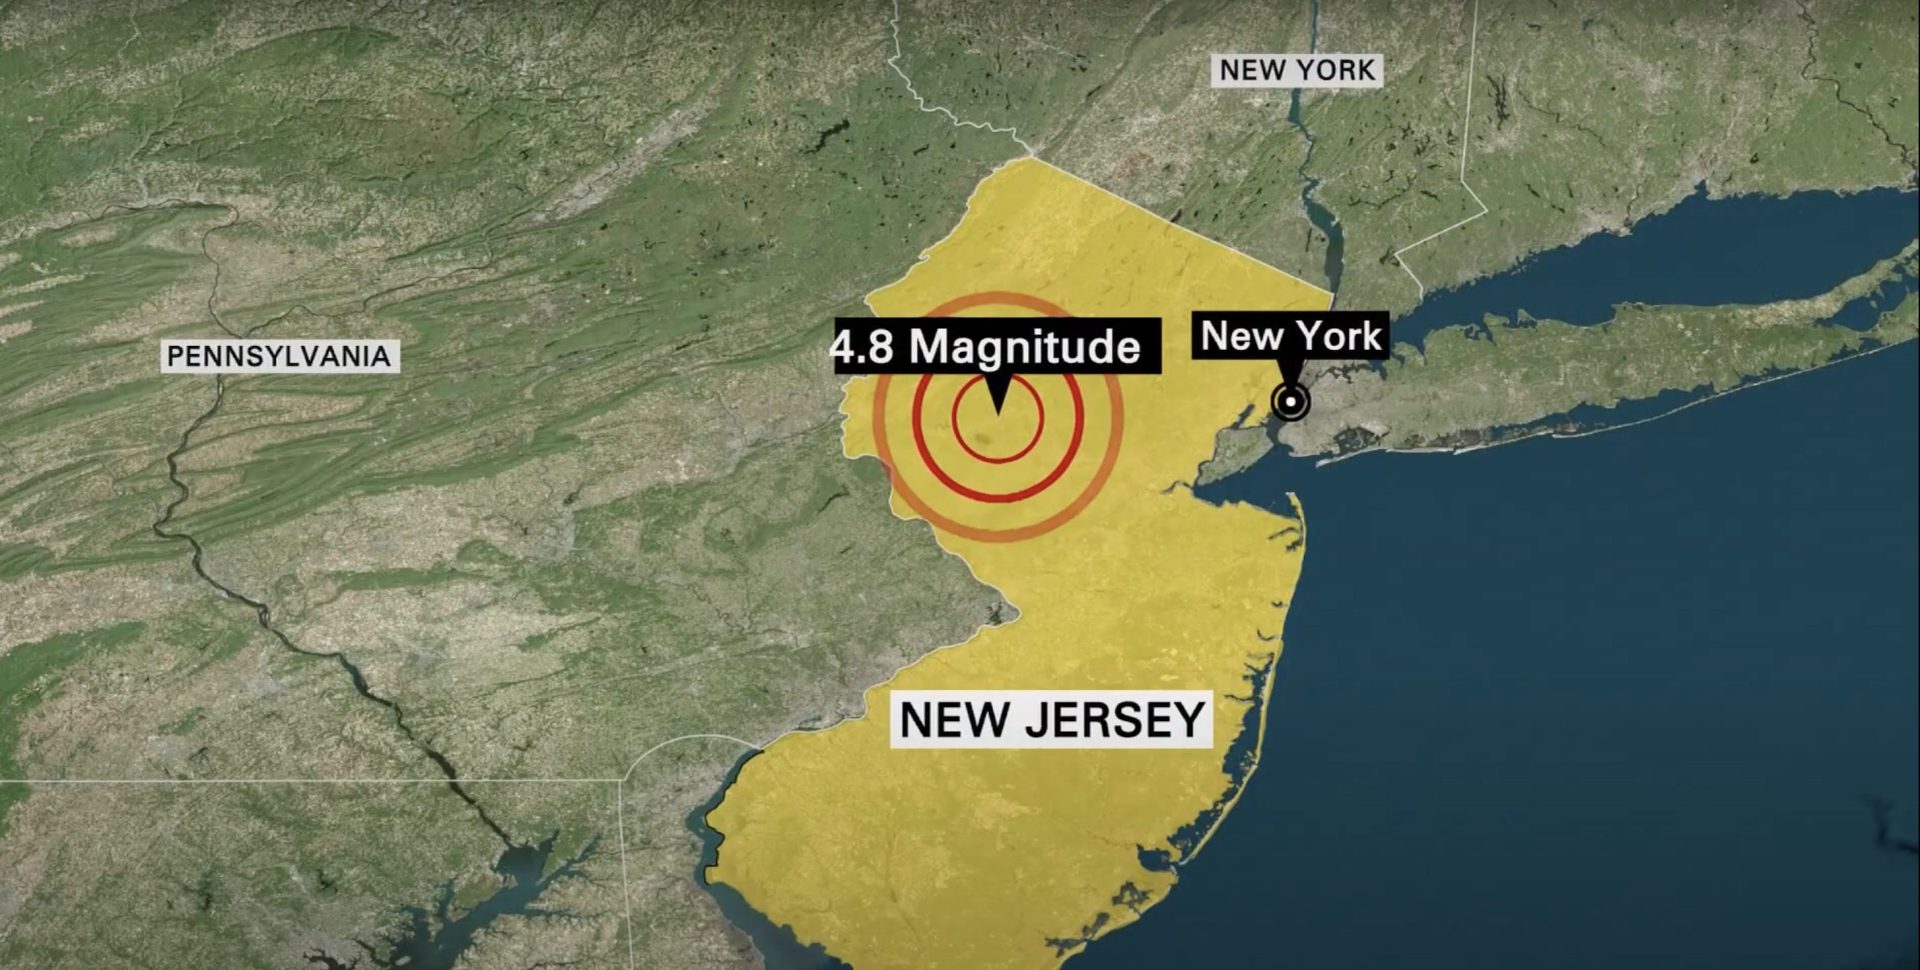 В Нью-Йорке произошло редкое землетрясение магнитудой 4.8 балла